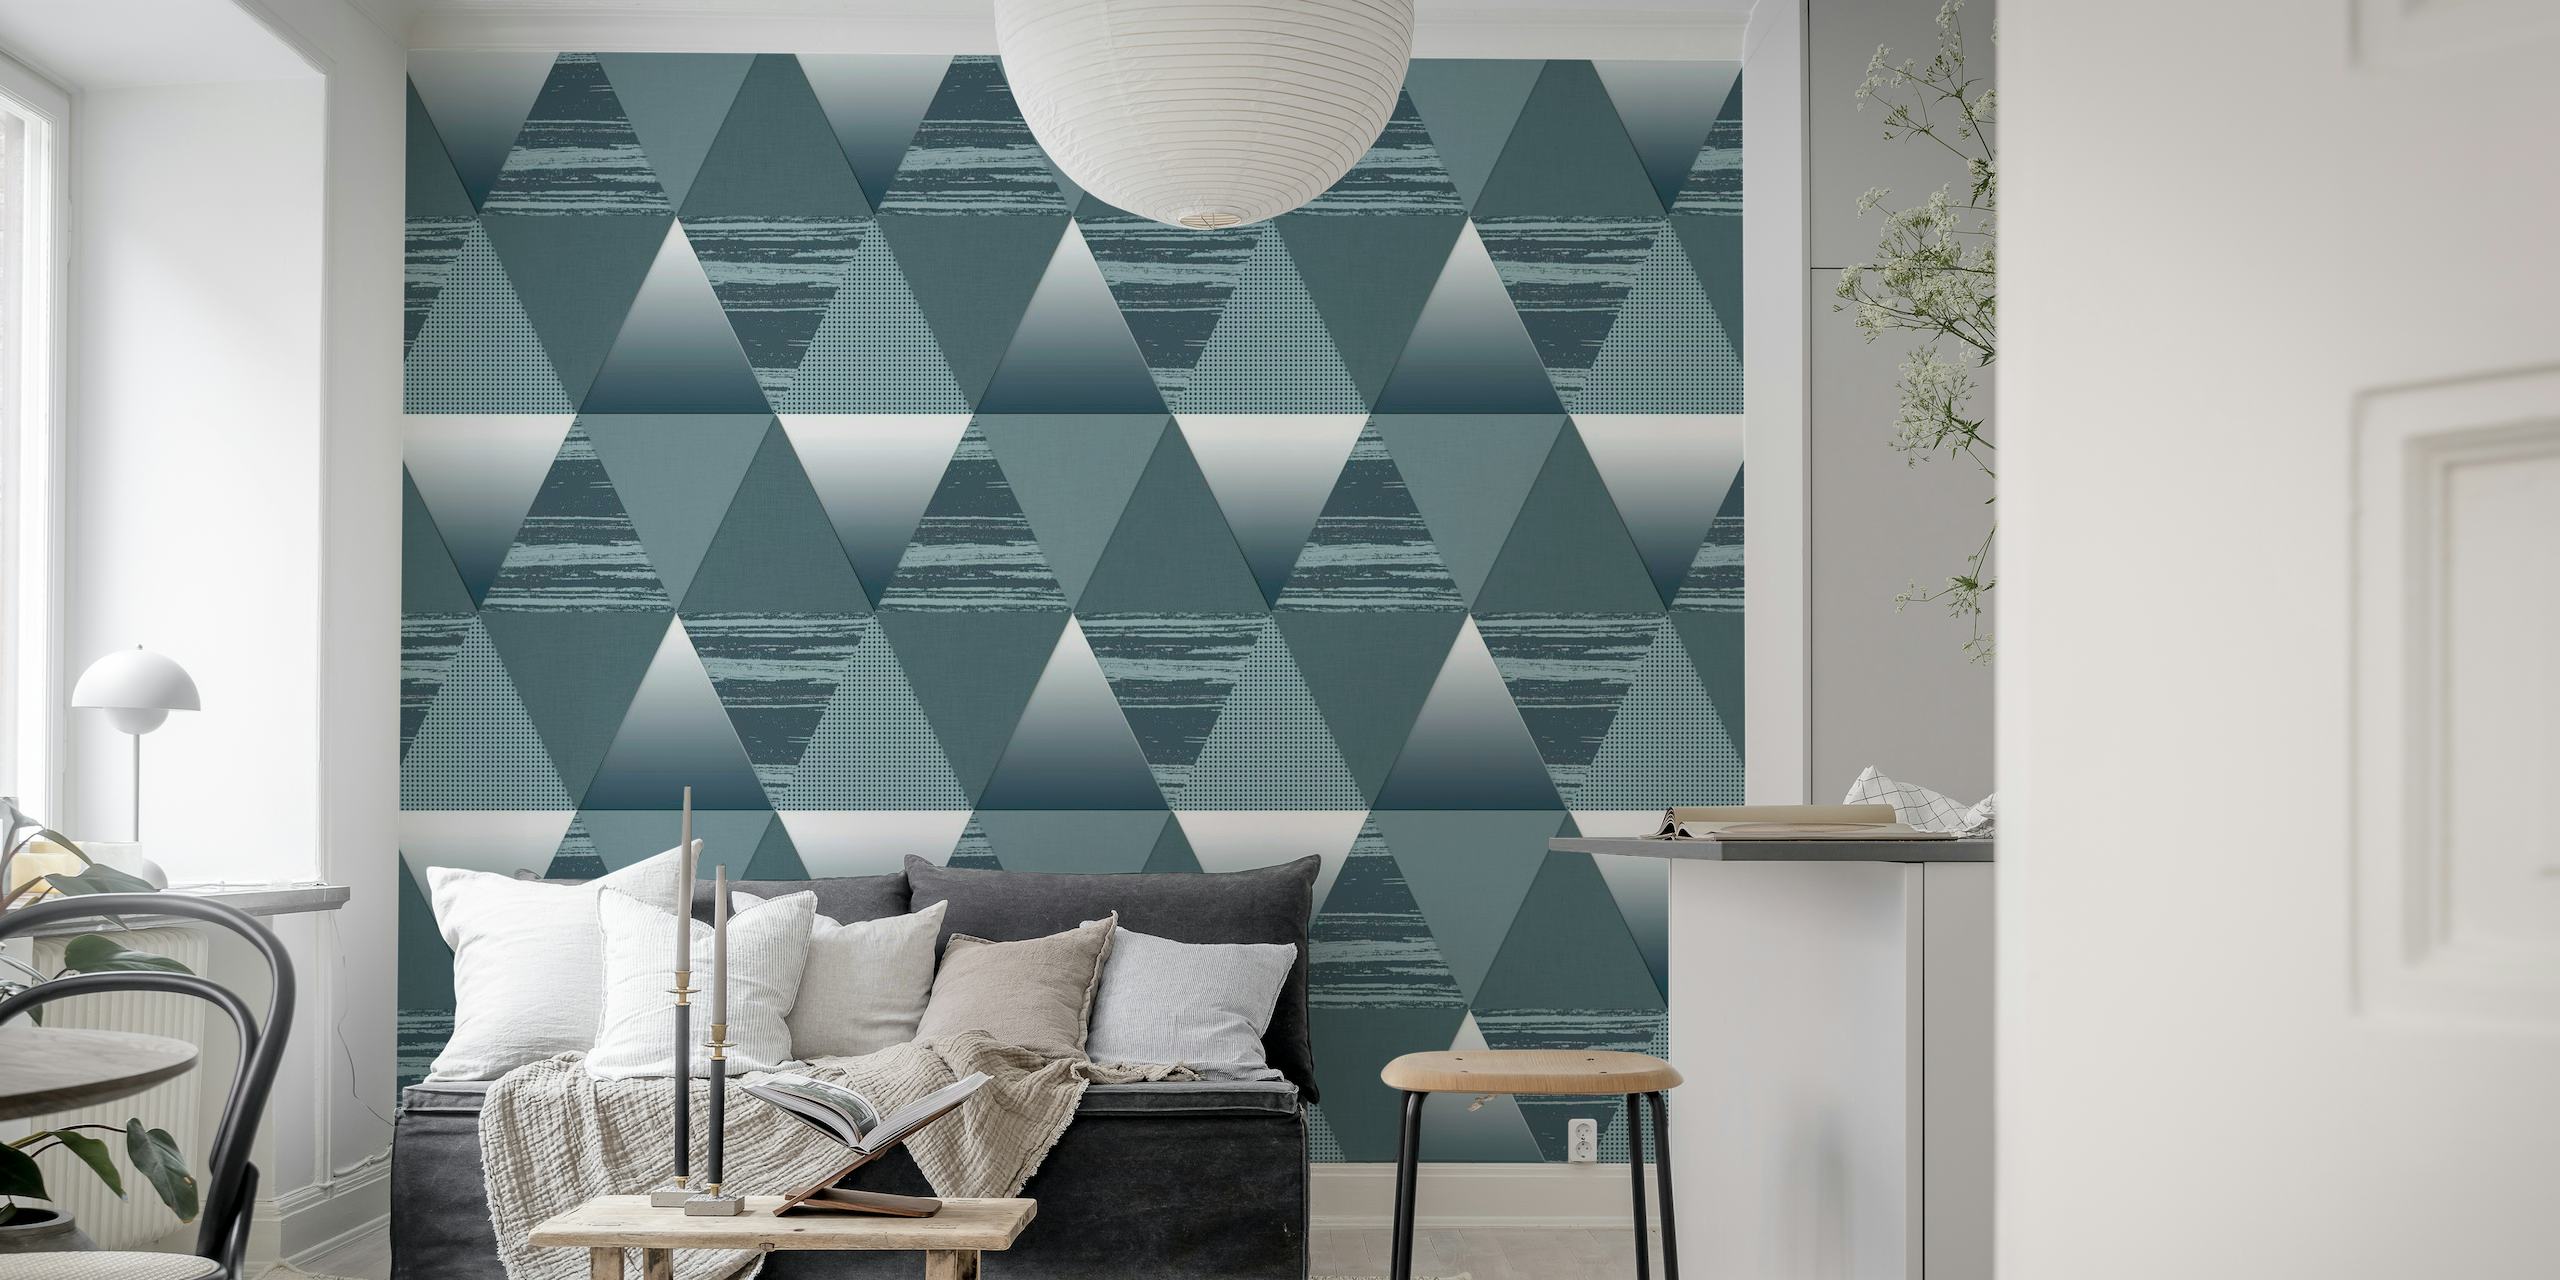 Väggmålning med geometriskt mönster med trianglar i skiffergrått och vitt